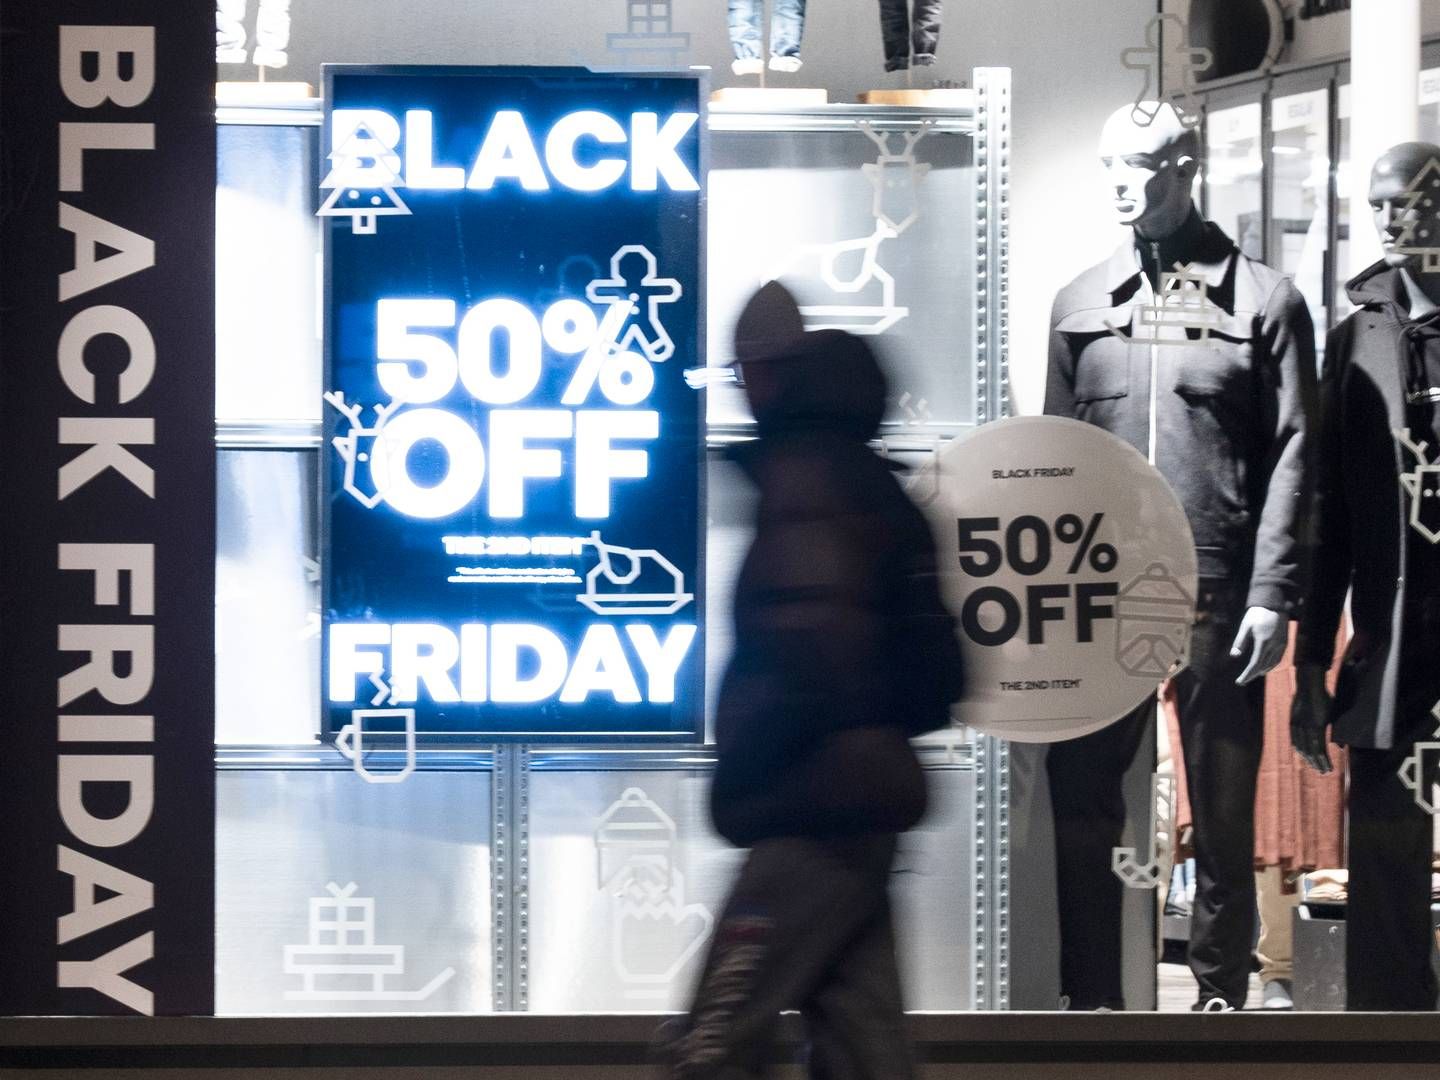 Black Friday hadde omsetningsnedgang i de fysiske butikkene. Samtidig betalte flere over Vipps. | Foto: Erik Flaaris Johansen / NTB